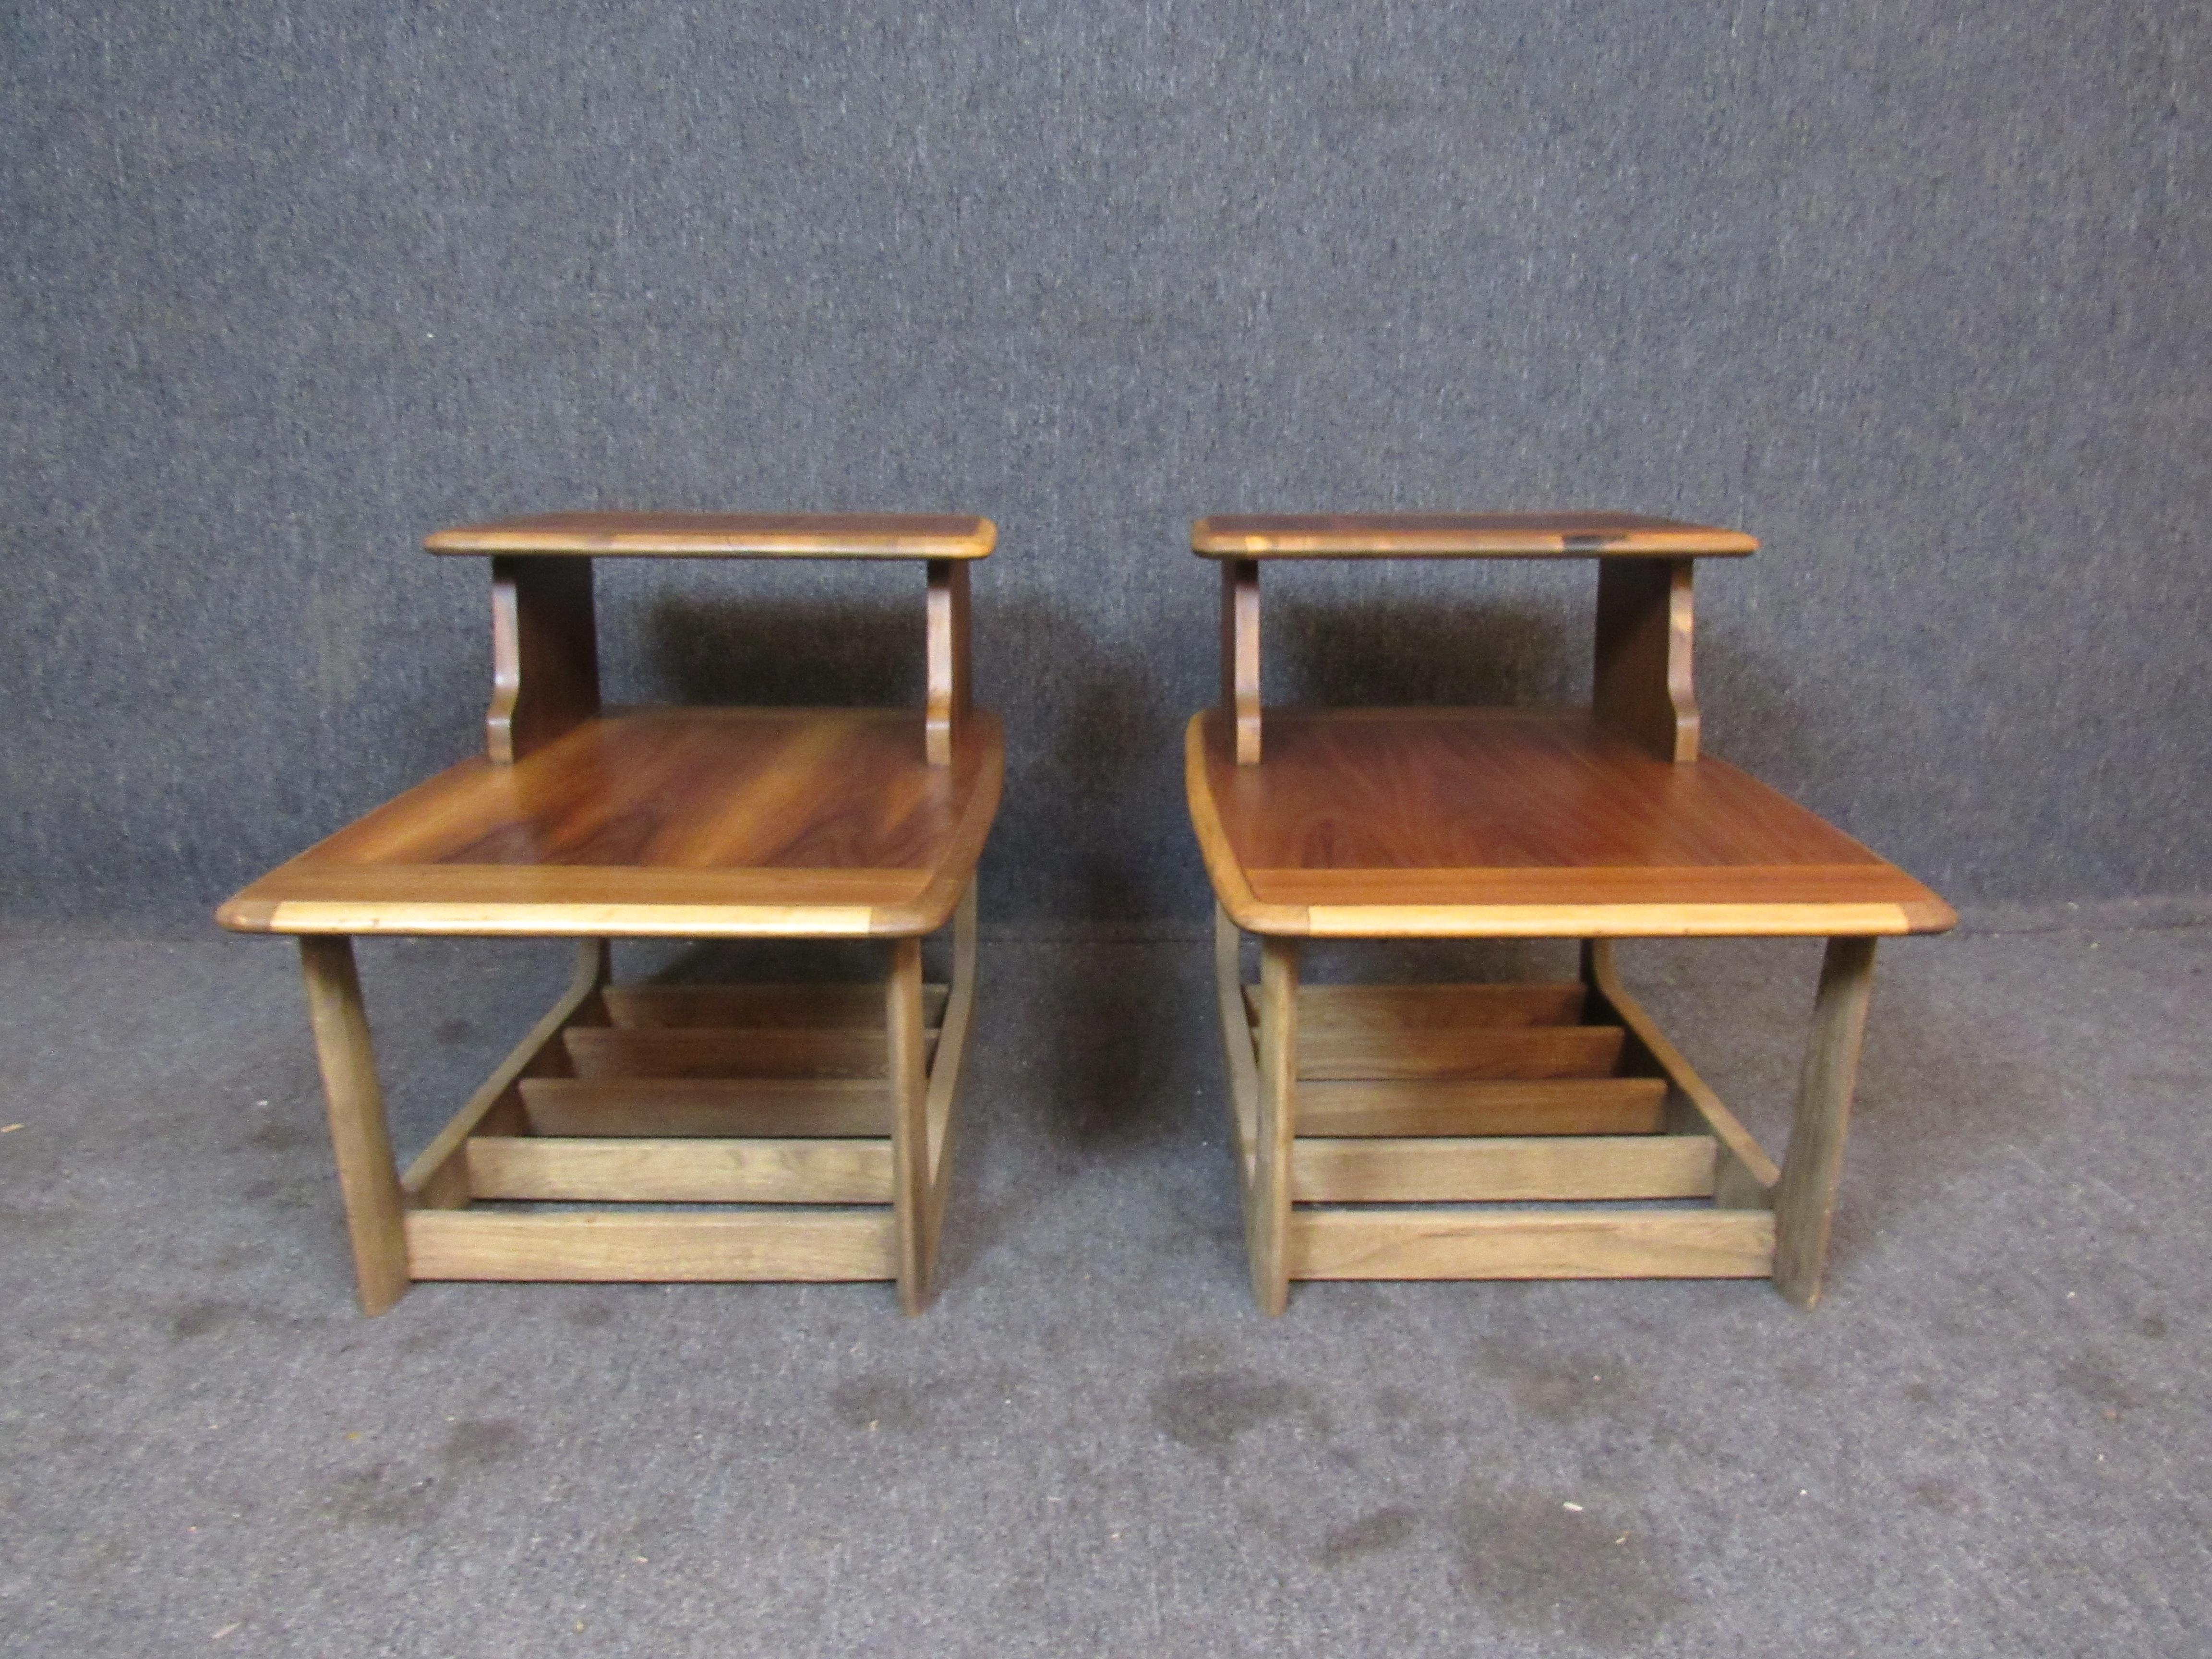 Fantastisches Paar Vintage-Stufentische von den weltberühmten Handwerkern von Bassett Furniture aus Virginia. Die Tische mit ihren wunderschönen Holzmaserungen, den eleganten geschnitzten Kanten, dem robusten Kufengestell und dem praktischen